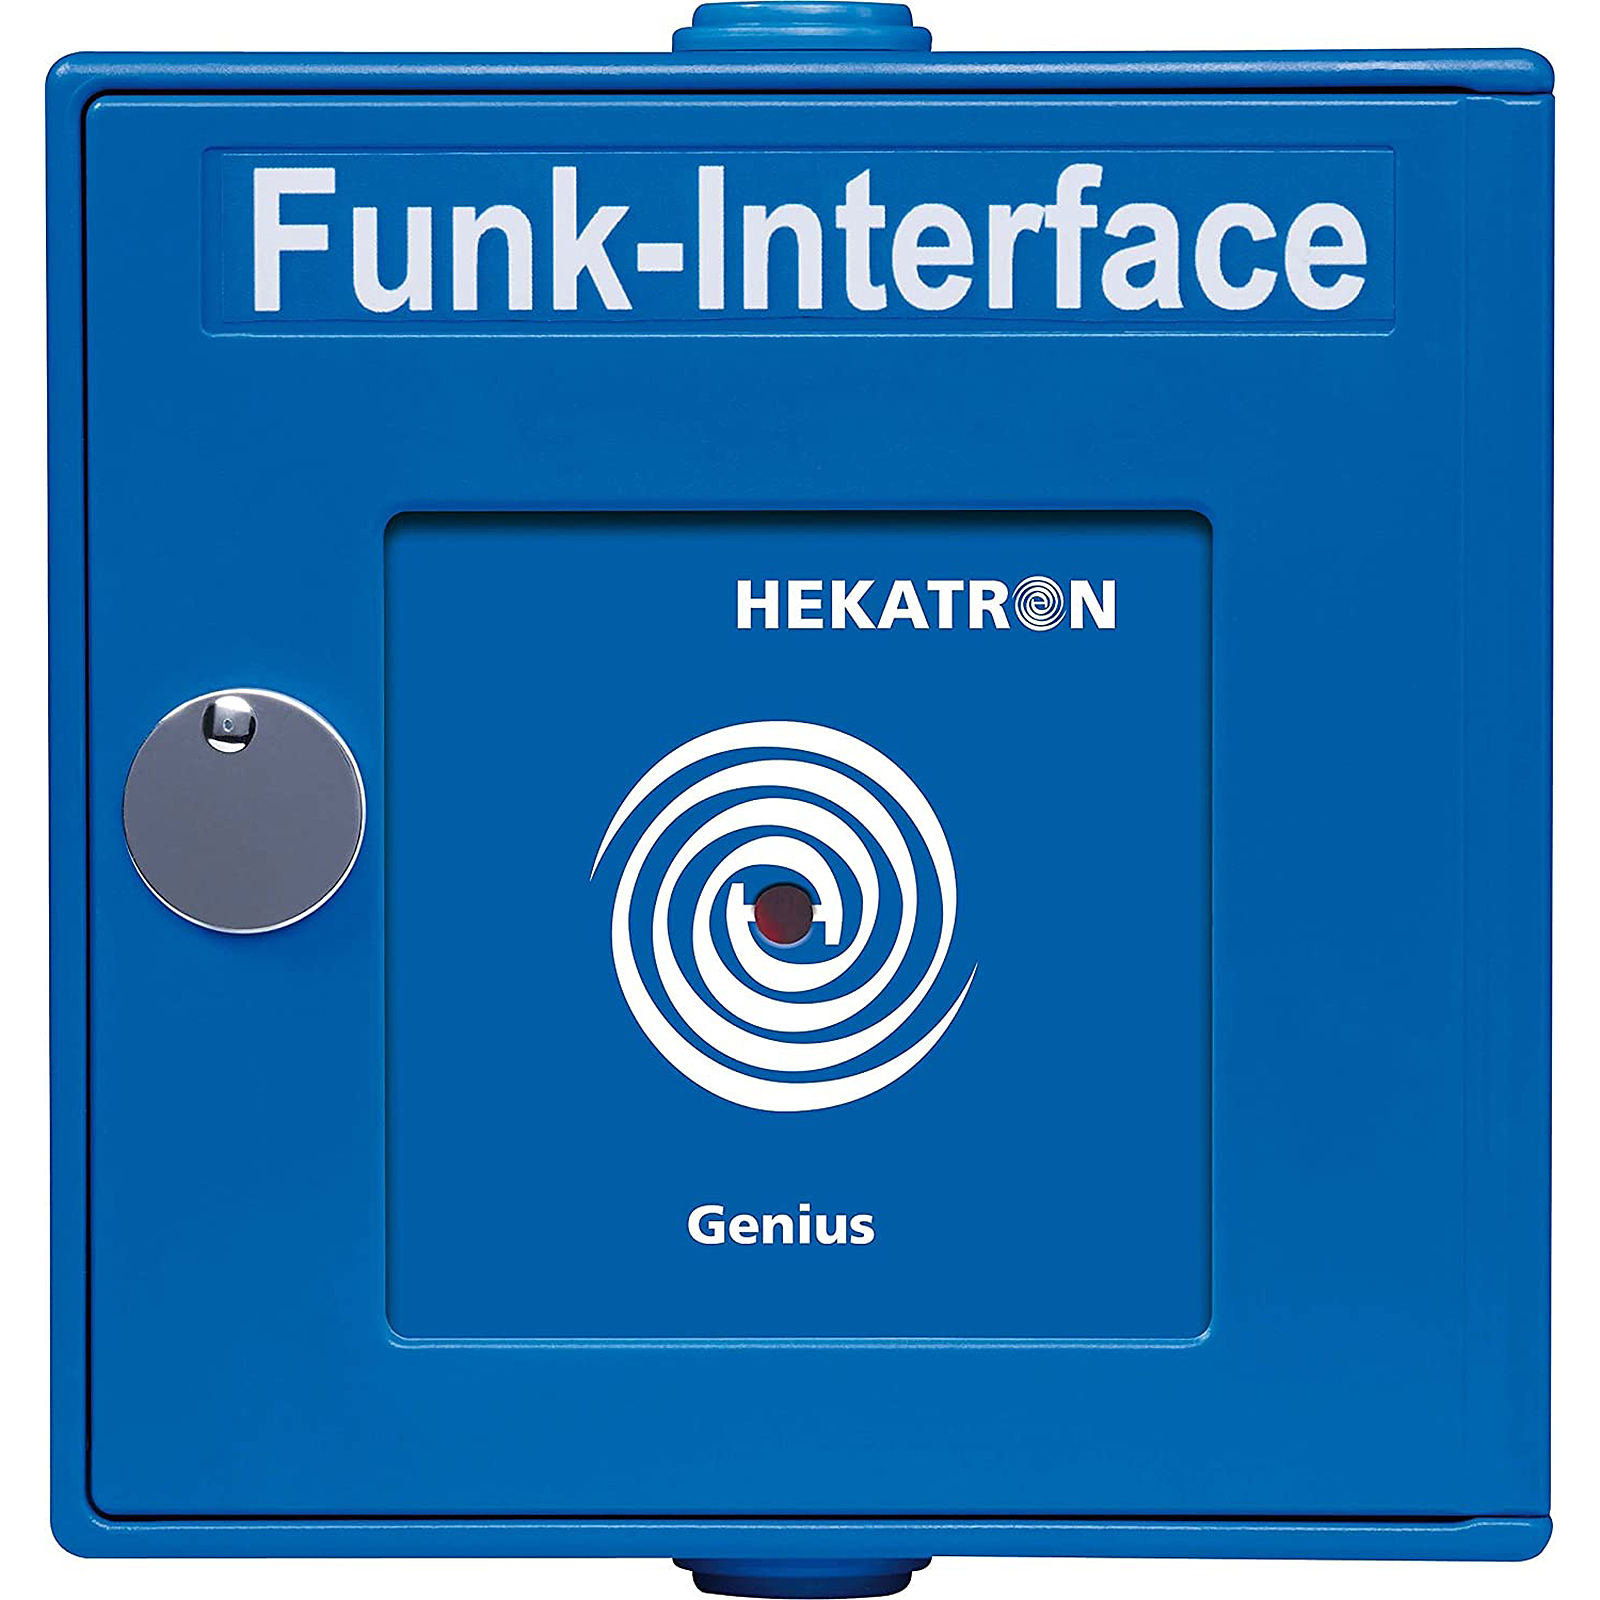 HEKATRON Funkhandtaster, Genius Blau